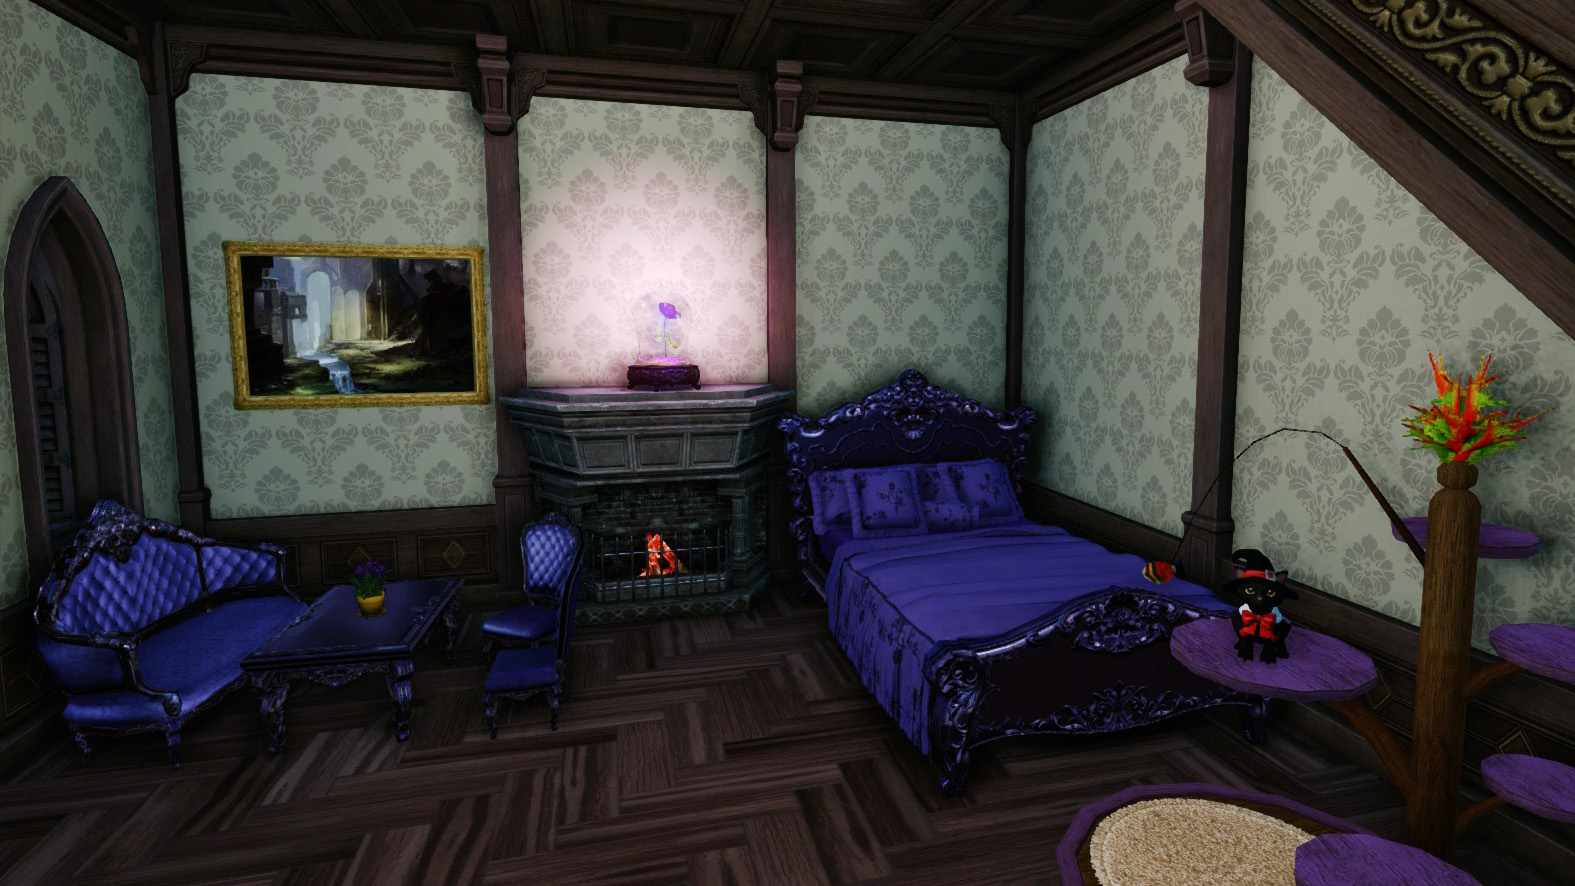 Готический зал битва. Архейдж Готическая кровать. Кровать Готика. Кровать в готическом стиле. Готический зал битва экстрасенсов.